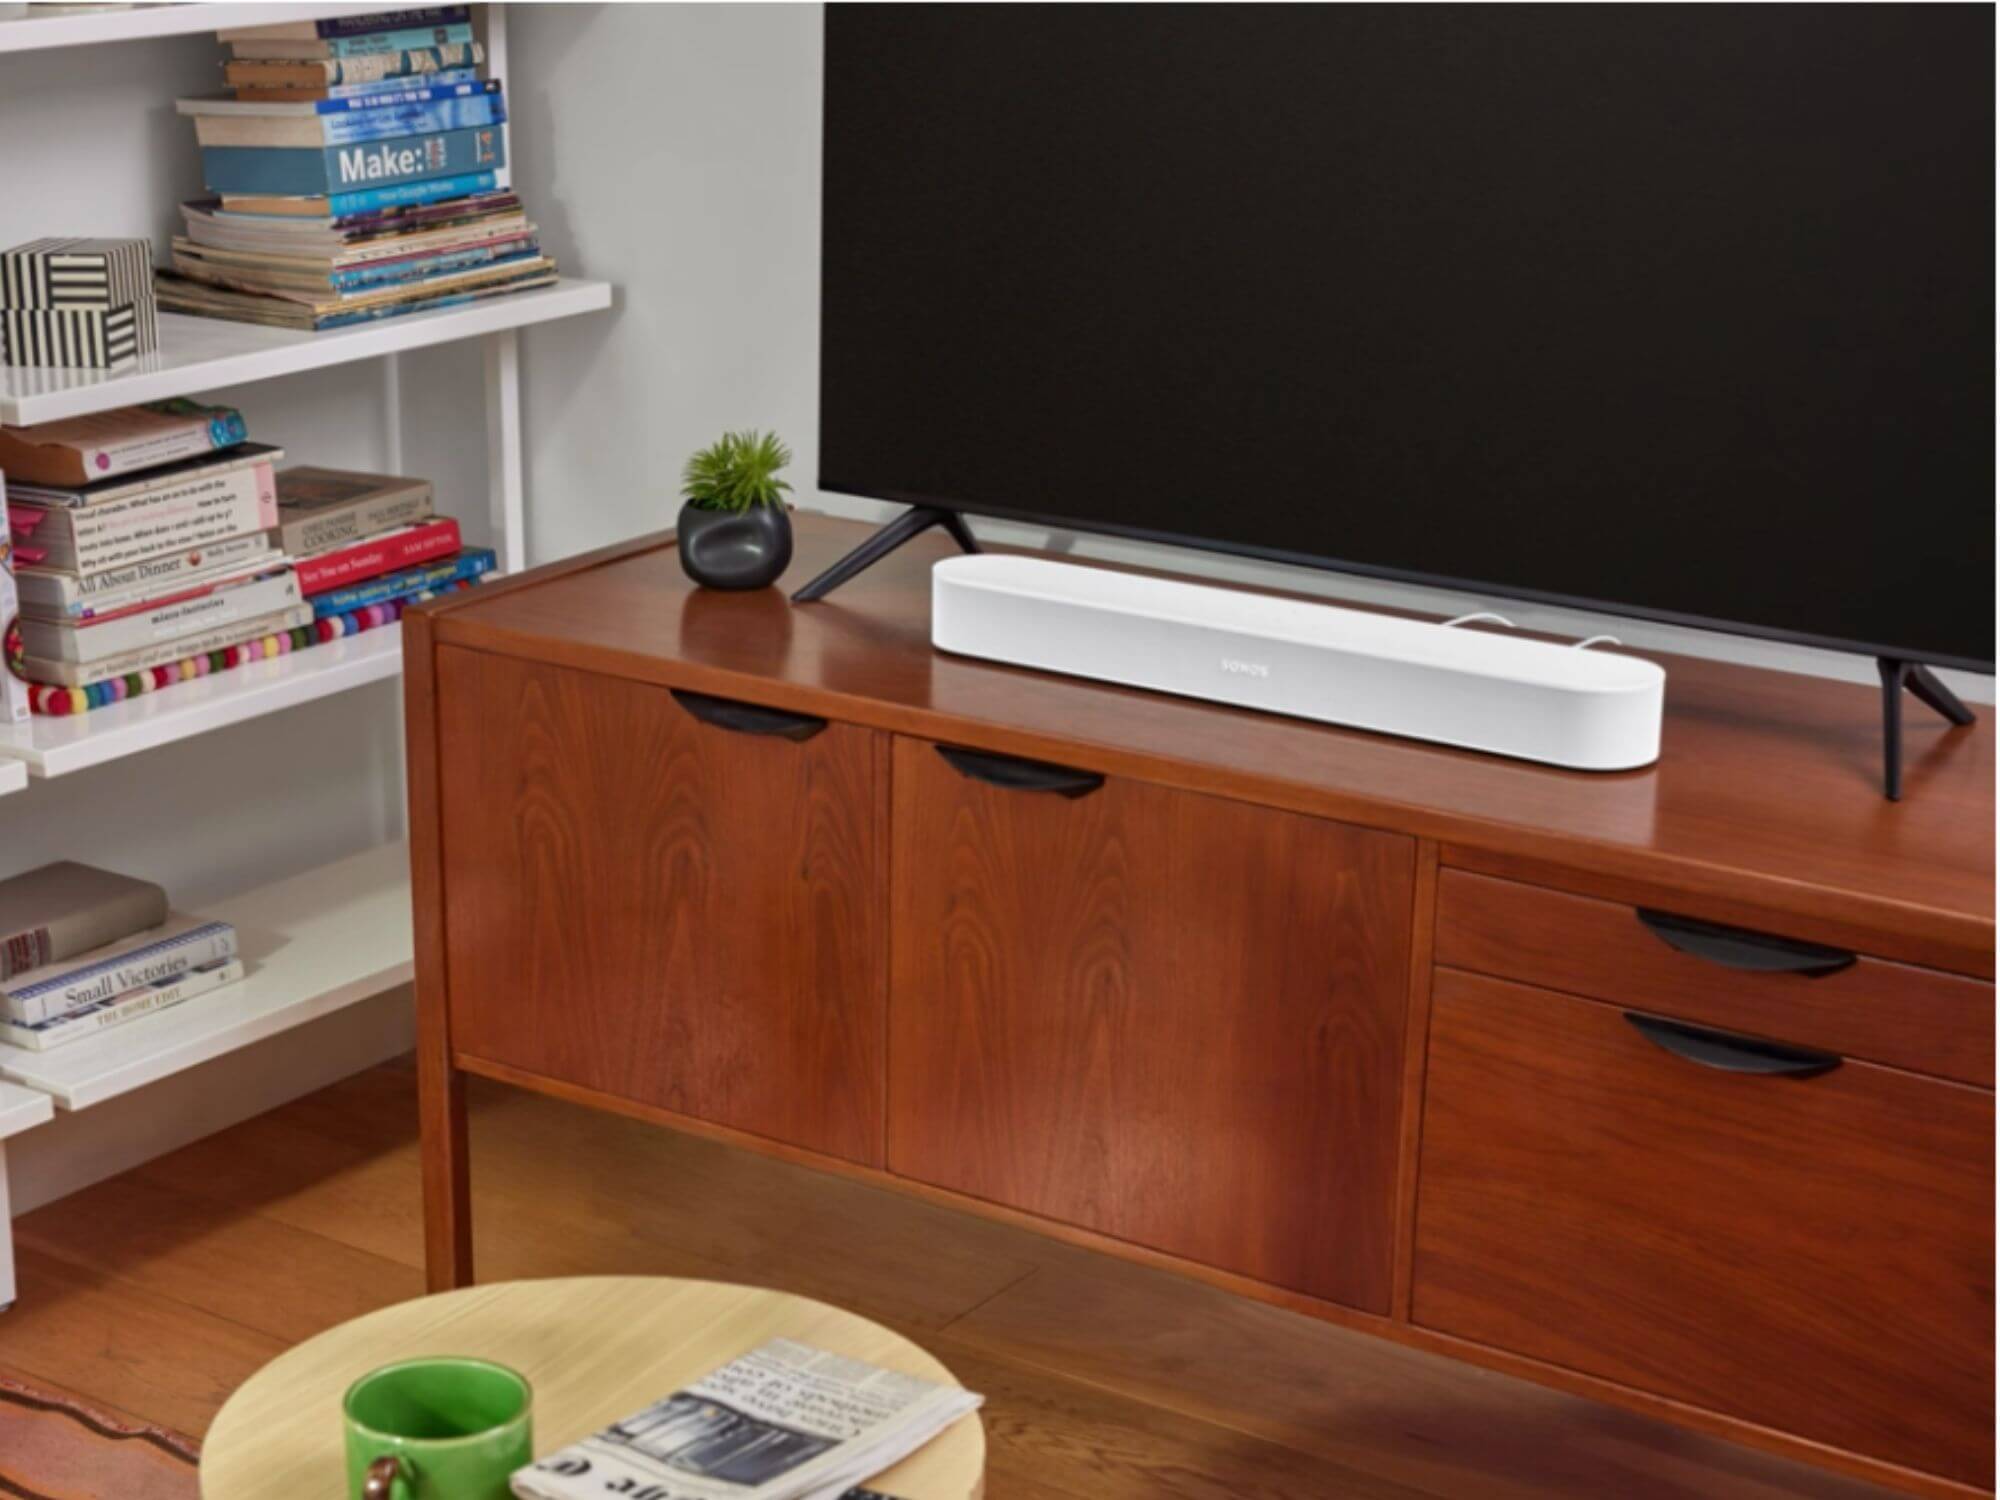 Sonos Speaker promotional image